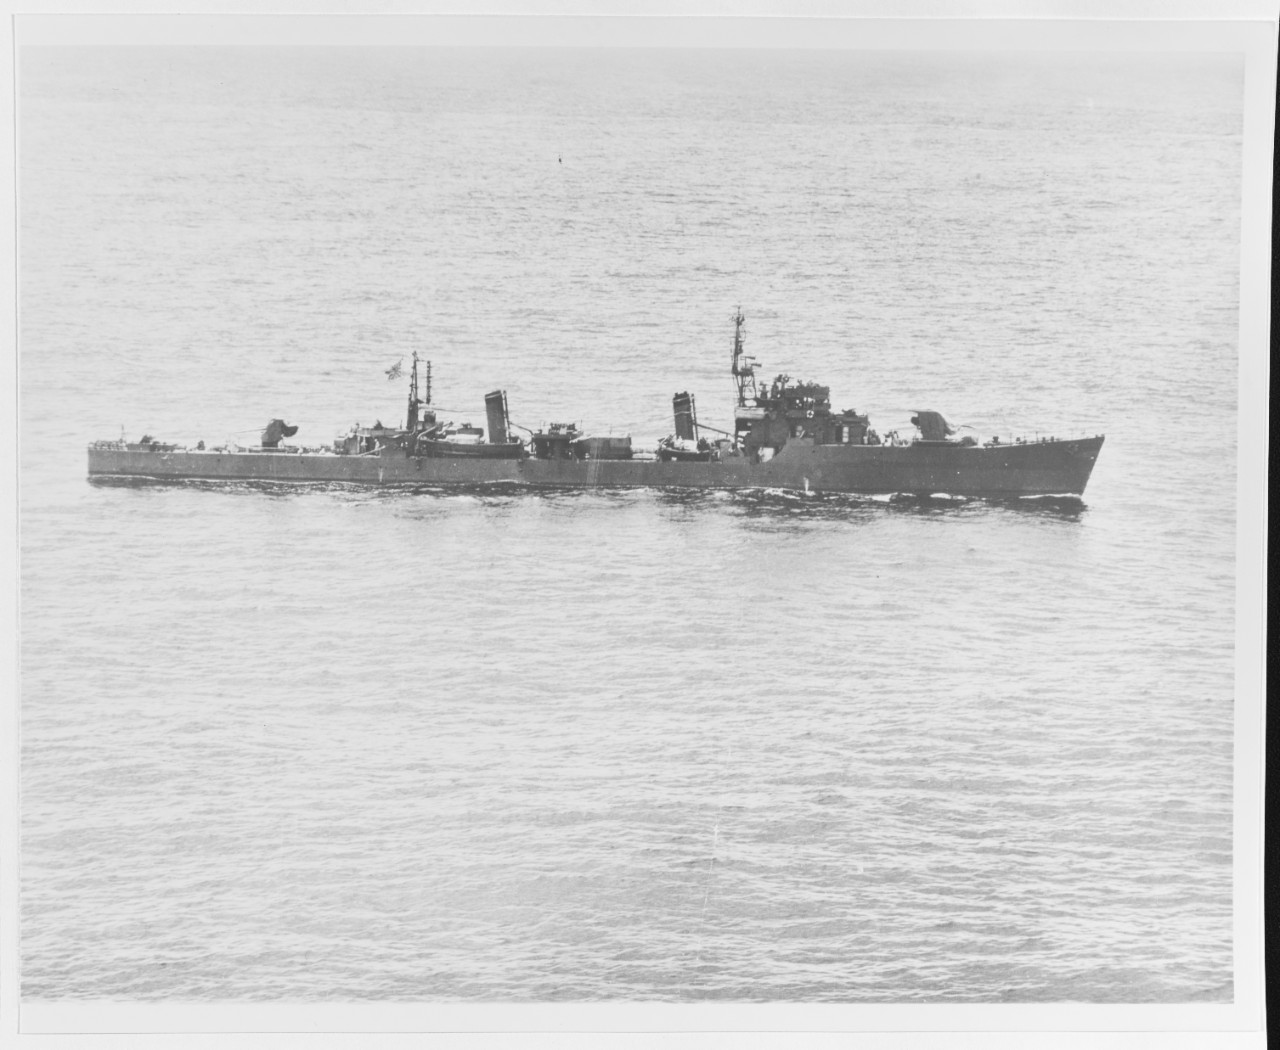 TACHIBANA class destroyer